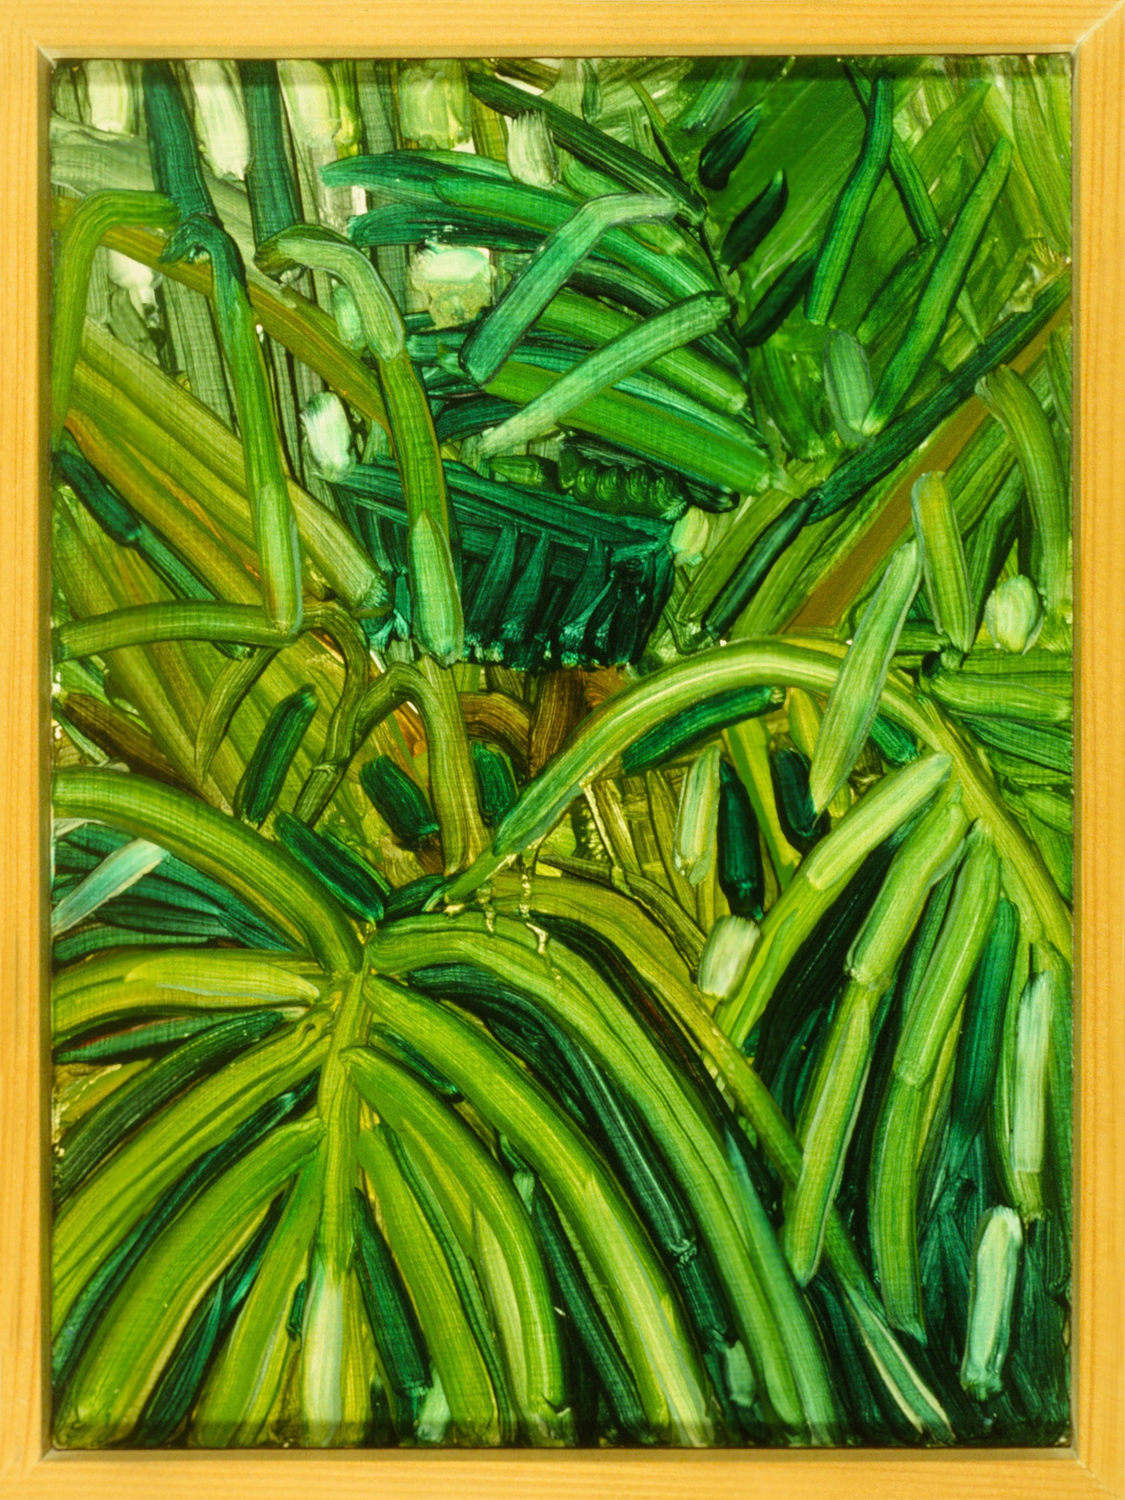  Palms, 9 x 12”, 1983 